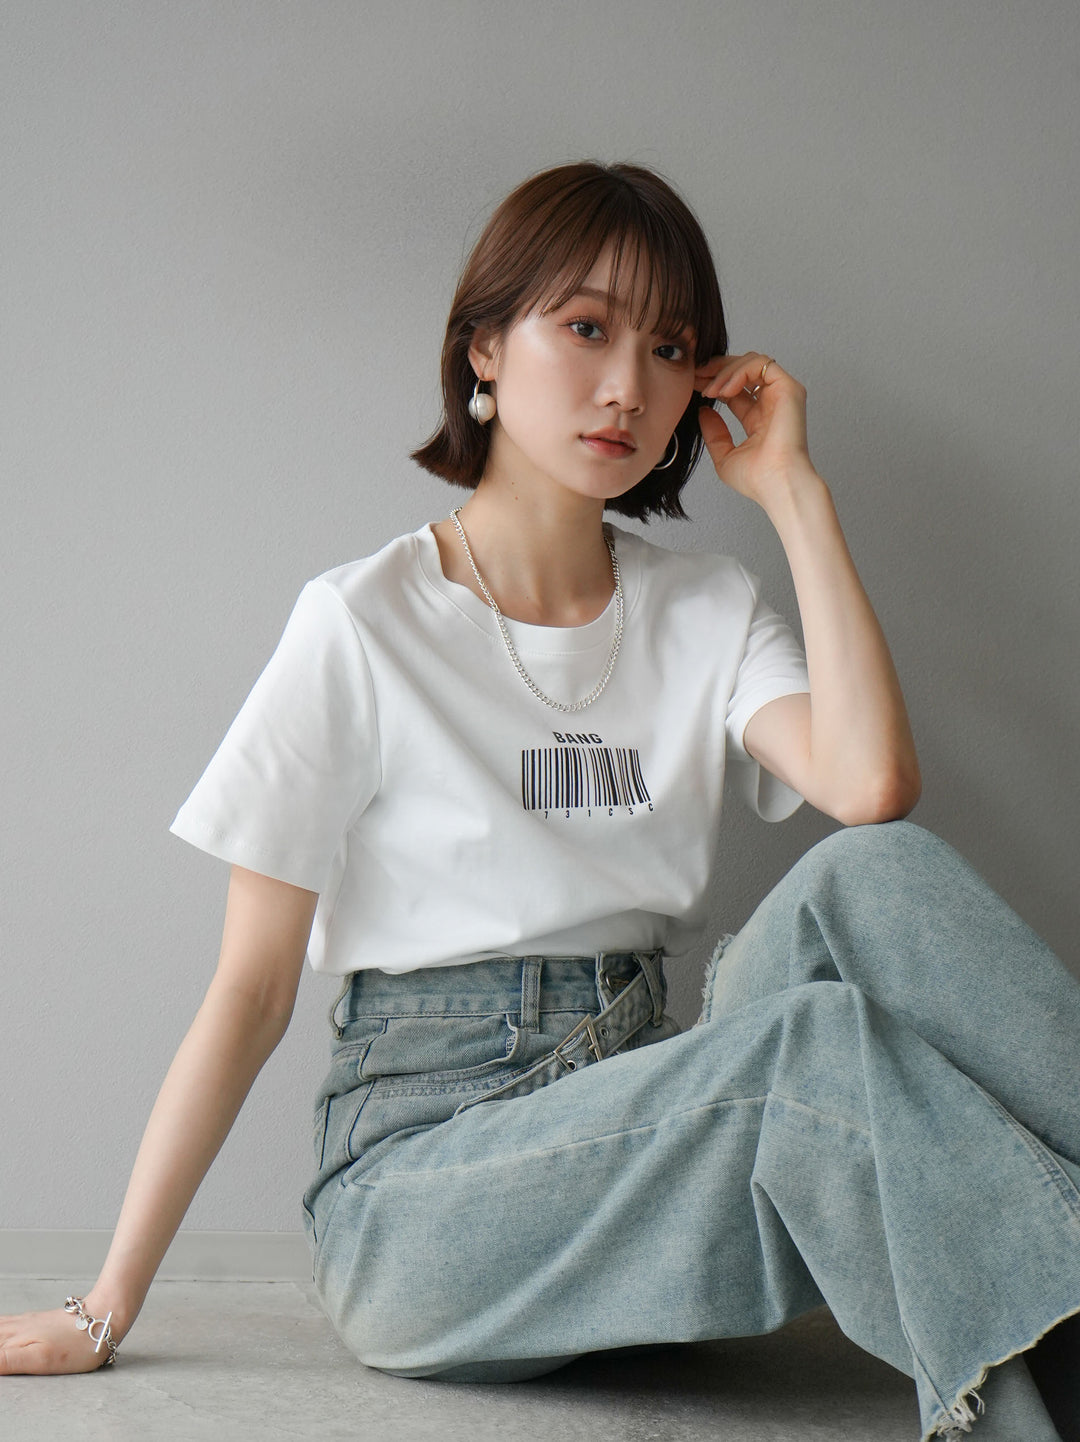 [予約]バーコードプリントTシャツ/ホワイト